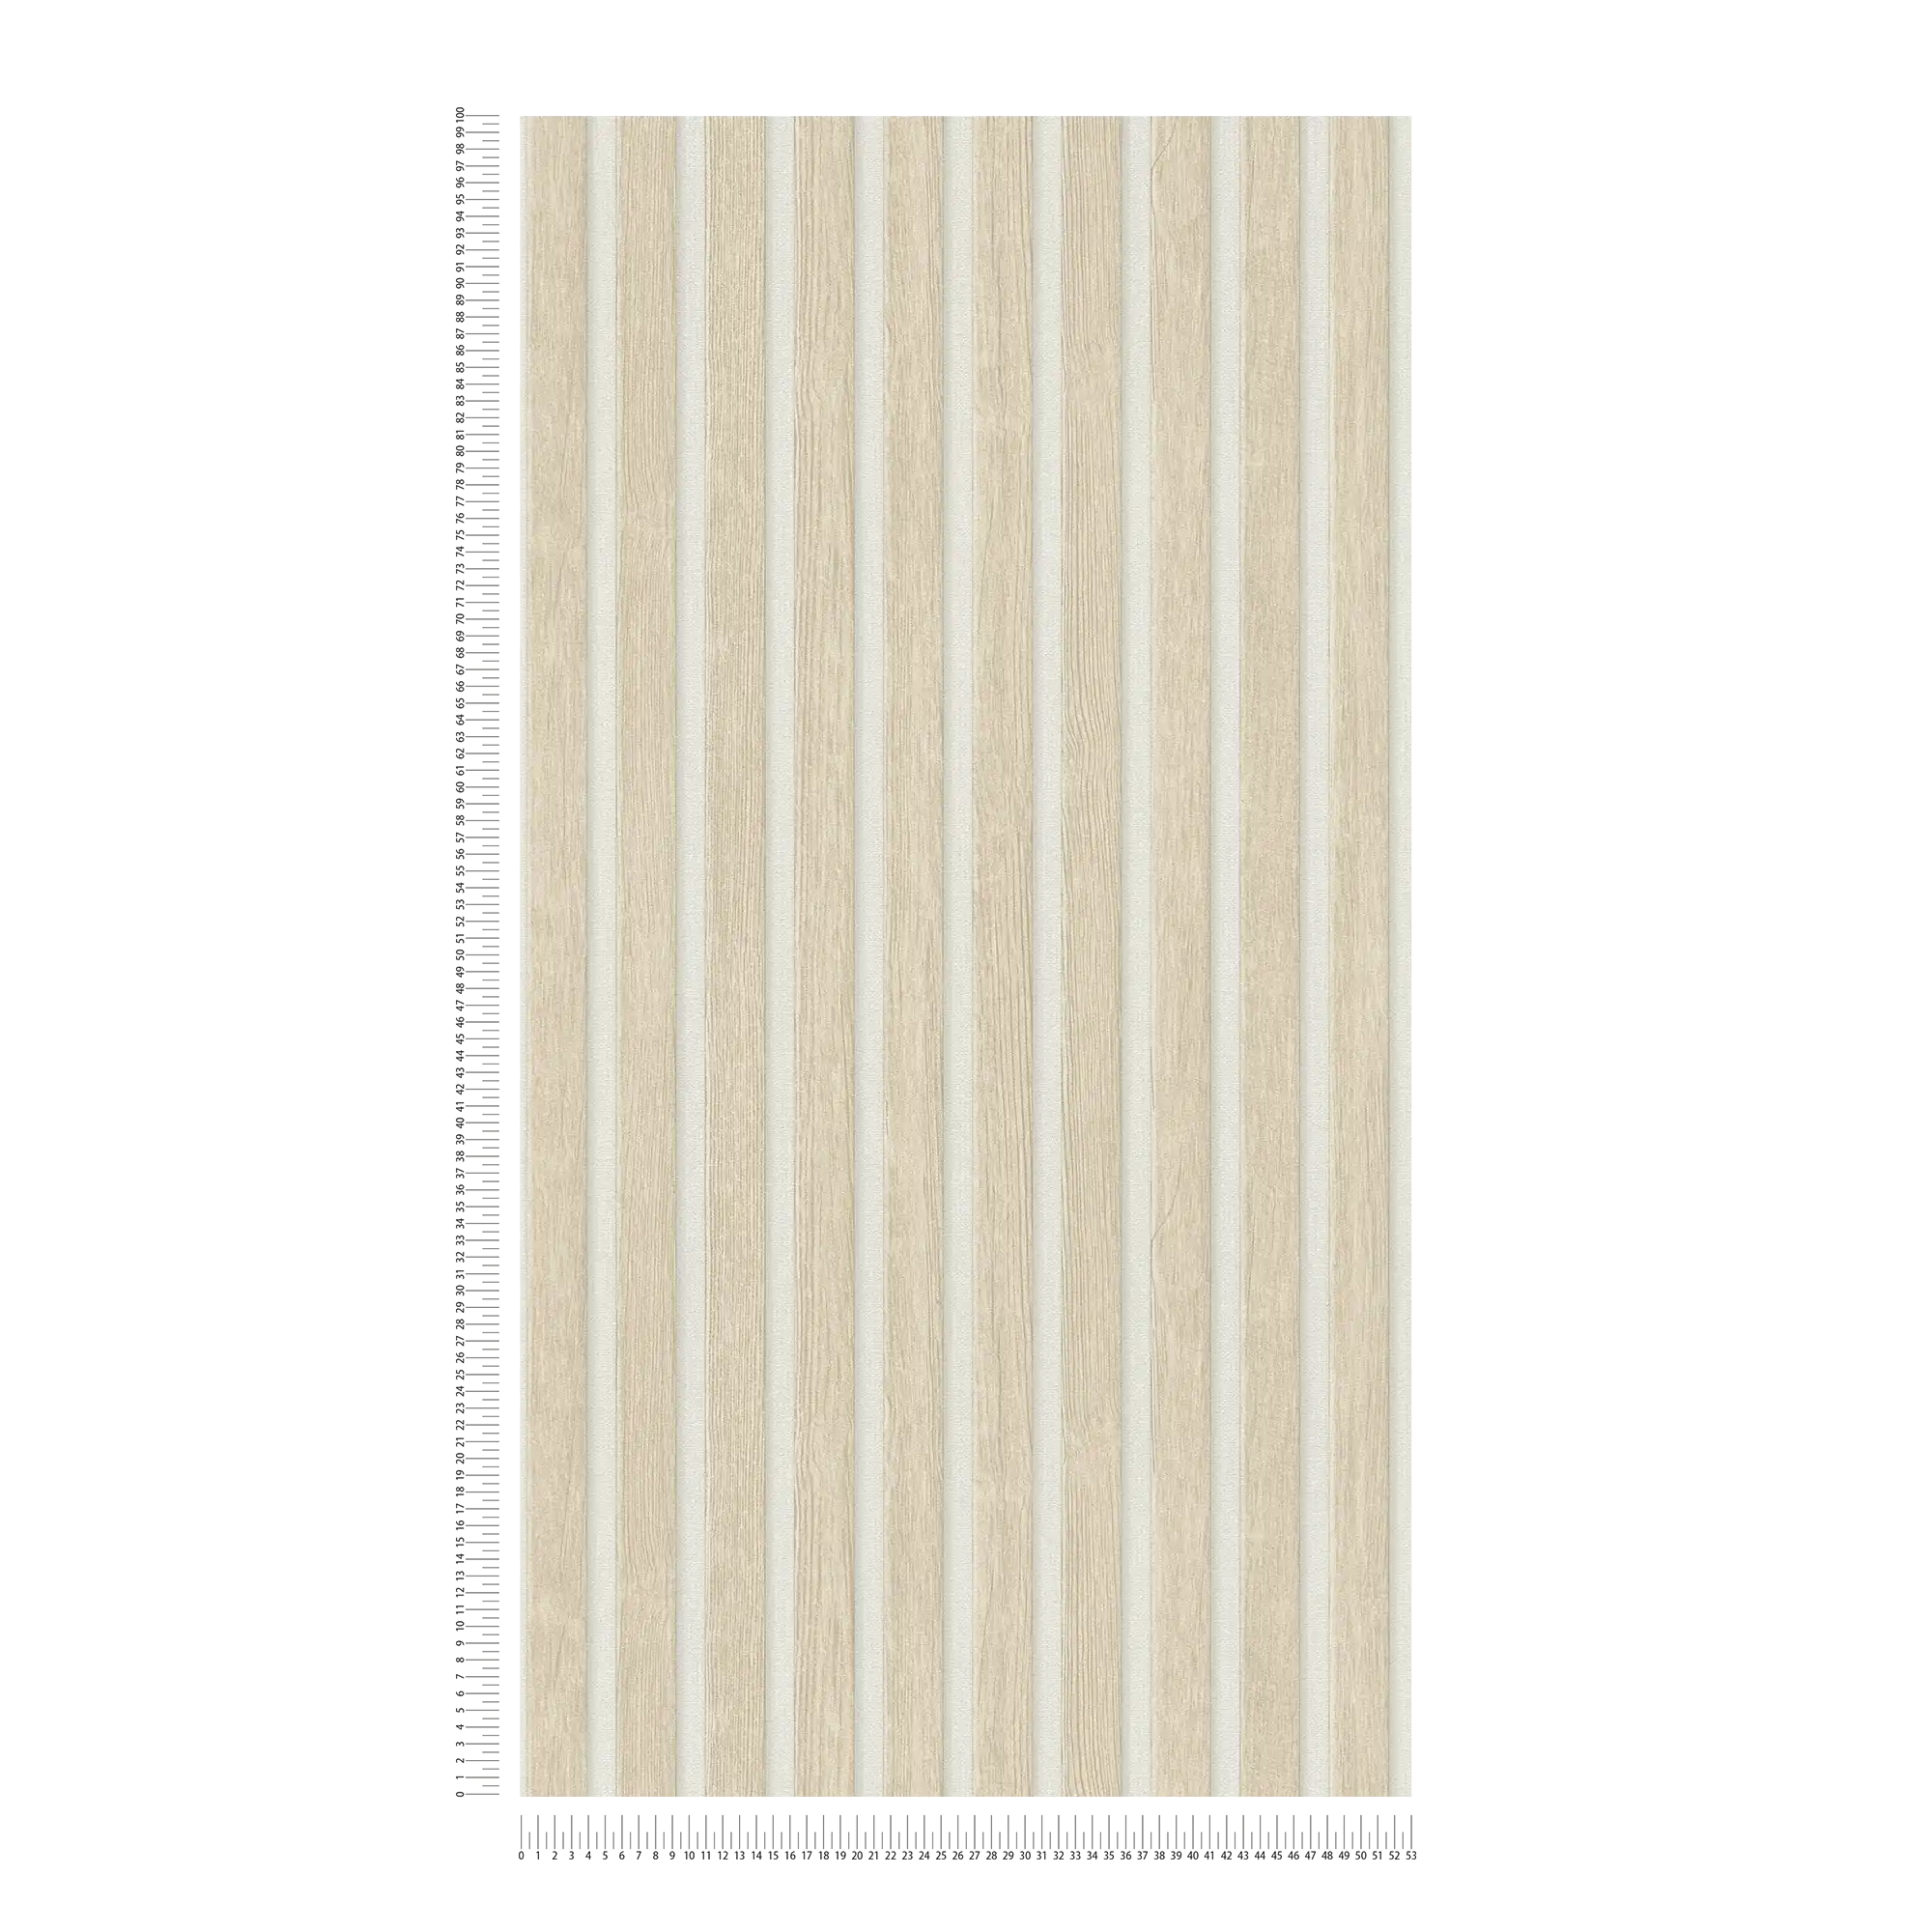             Houten behangpapier in akoestische paneeloptiek - beige, wit
        